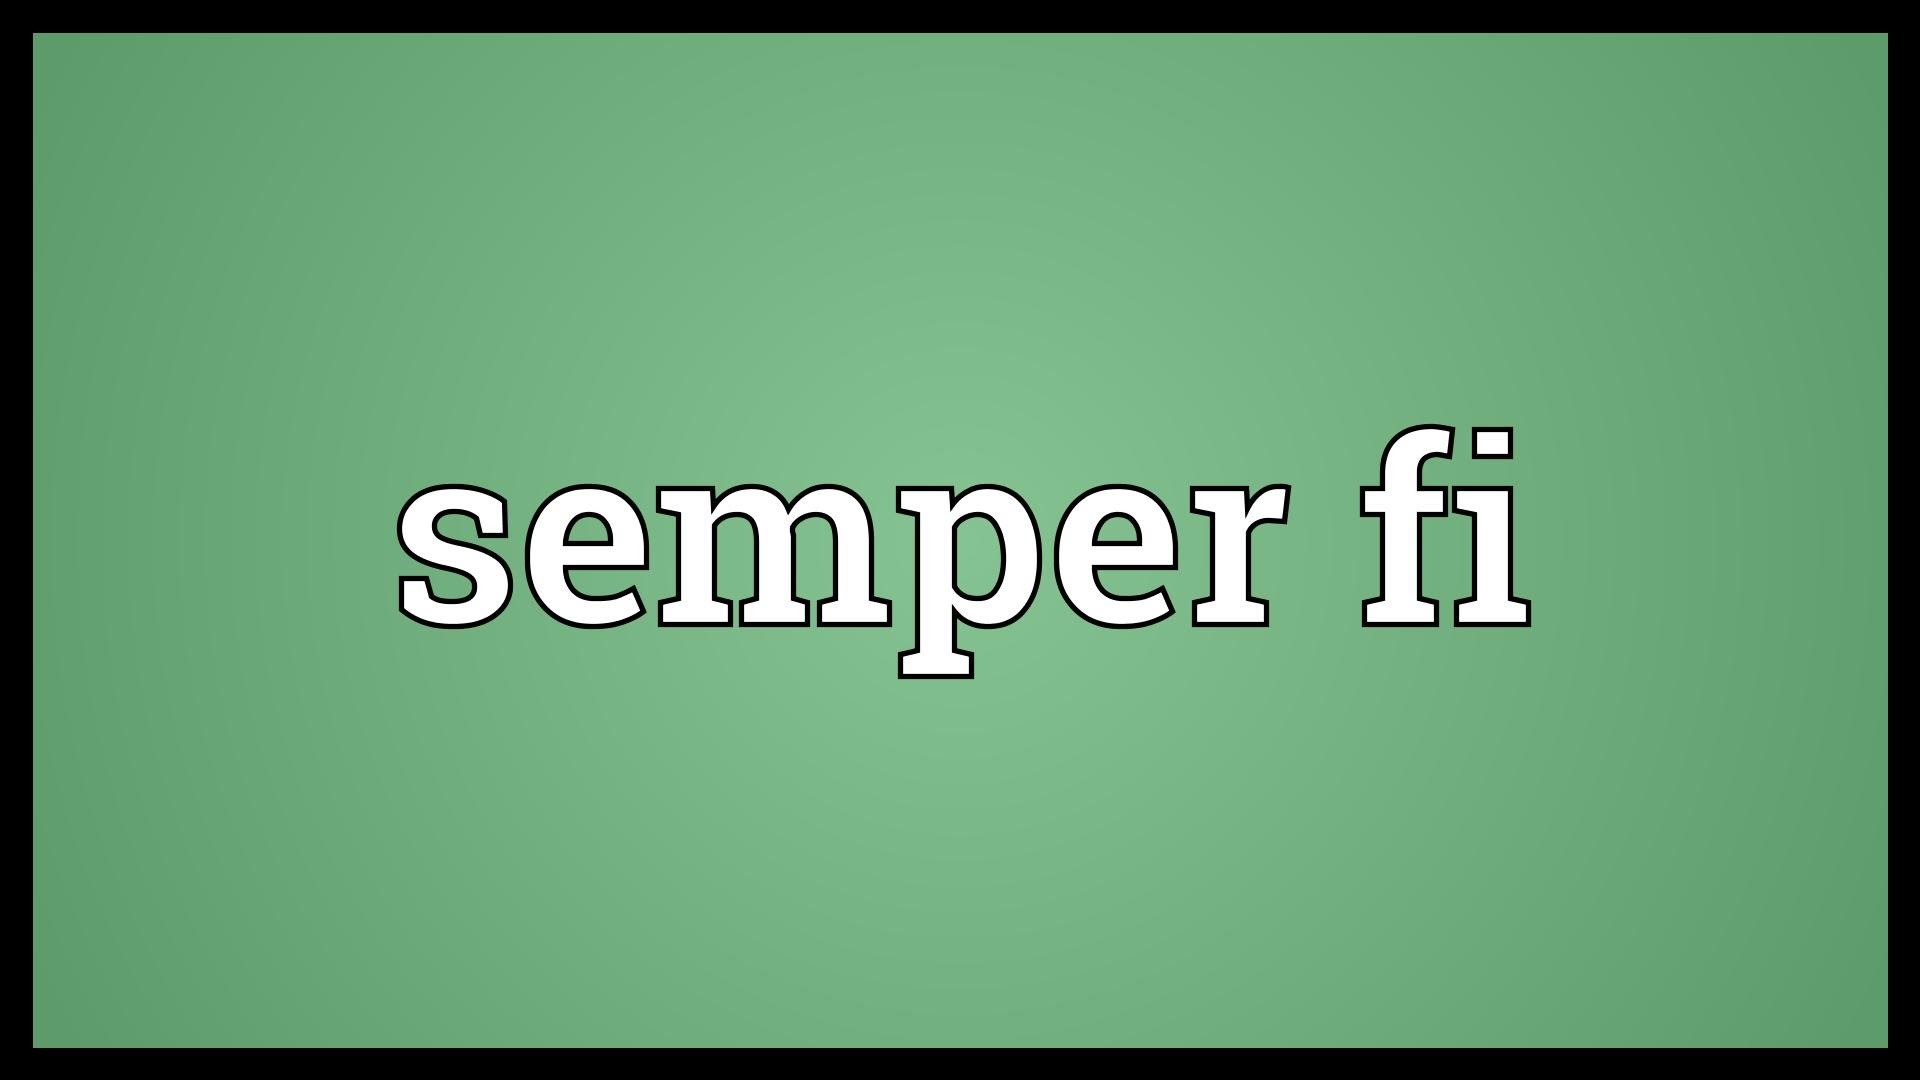 1920x1080 Semper fi Meaning